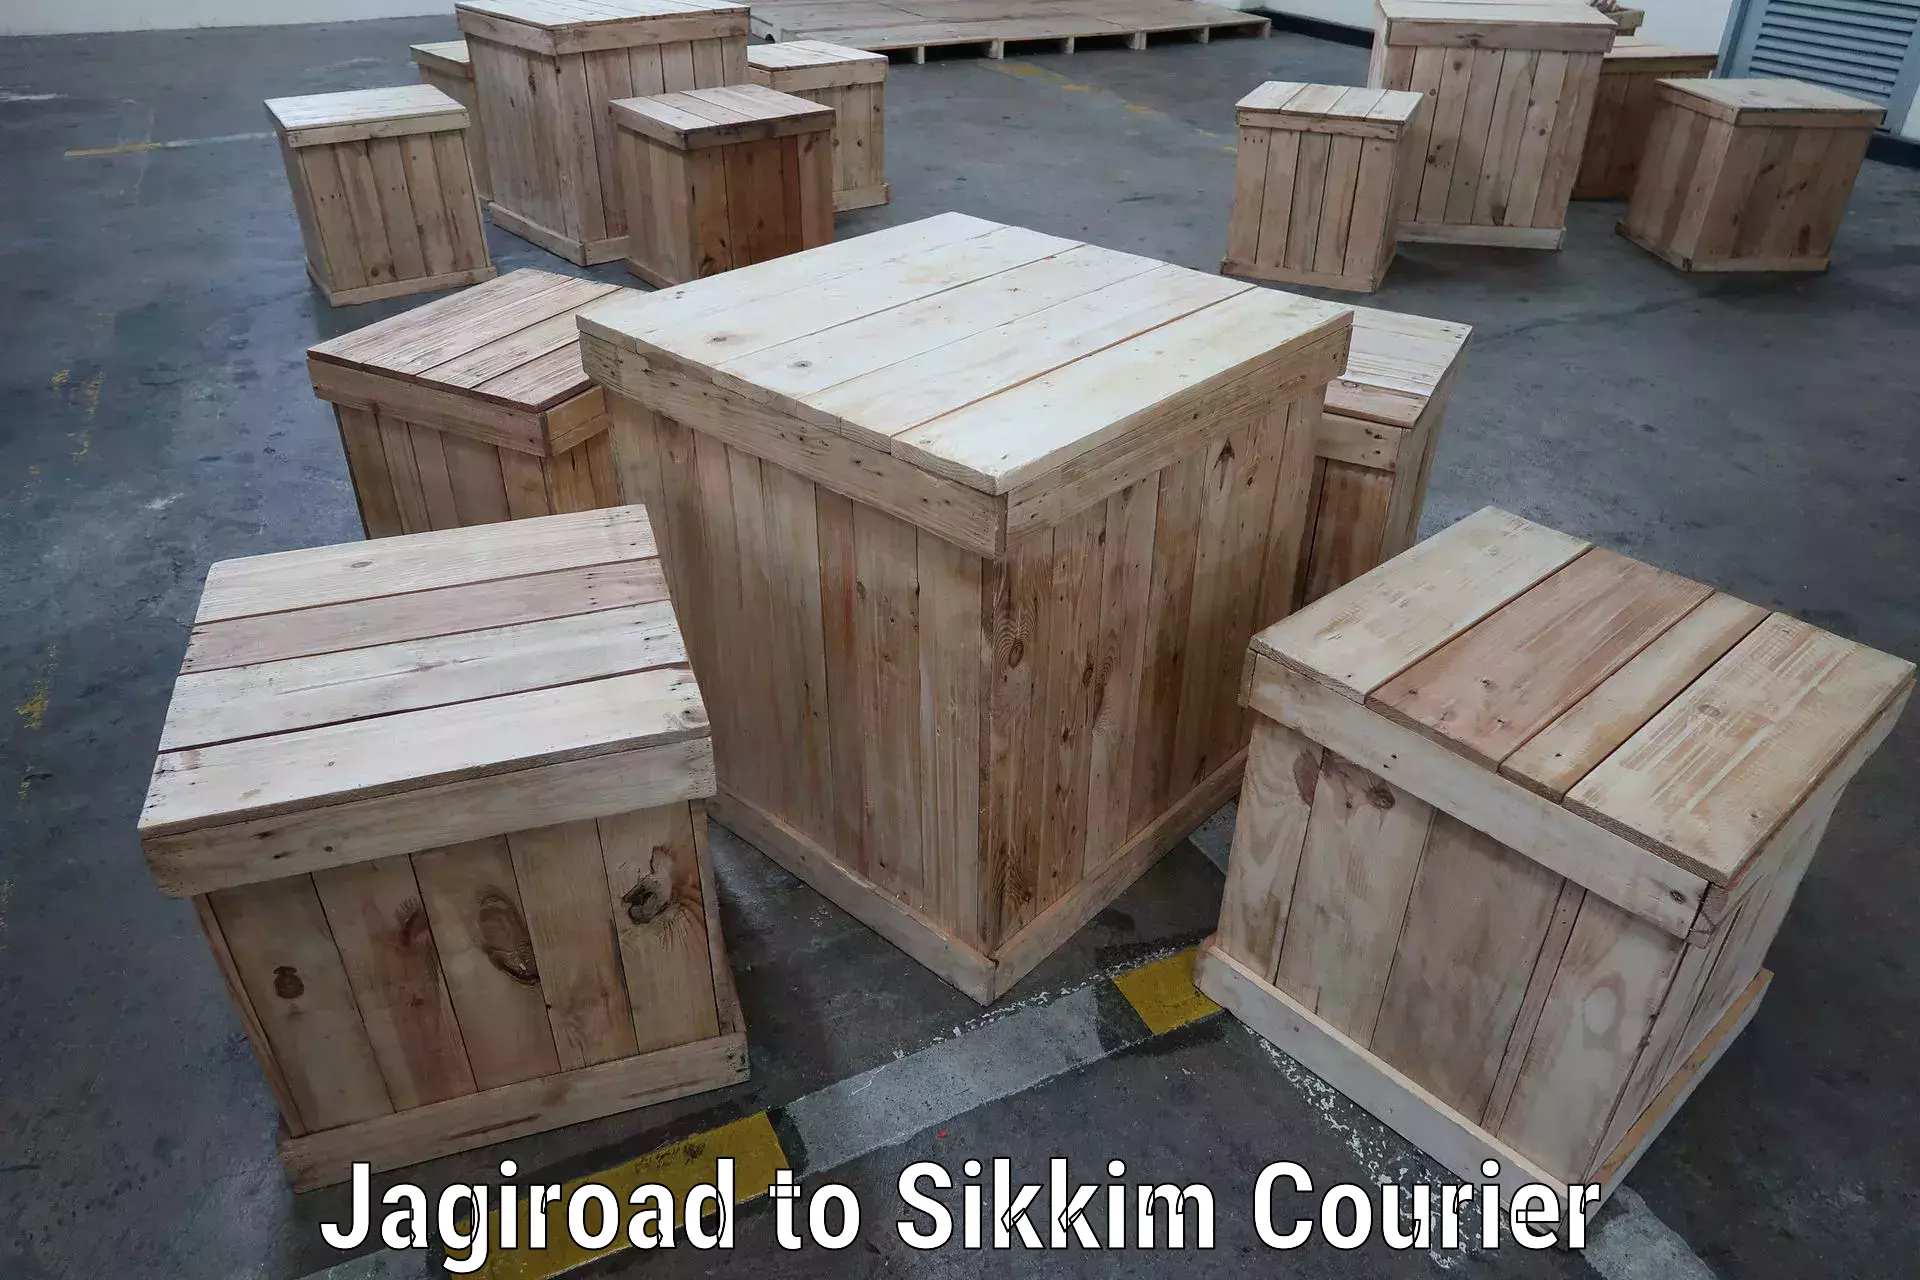 Door-to-door freight service Jagiroad to East Sikkim